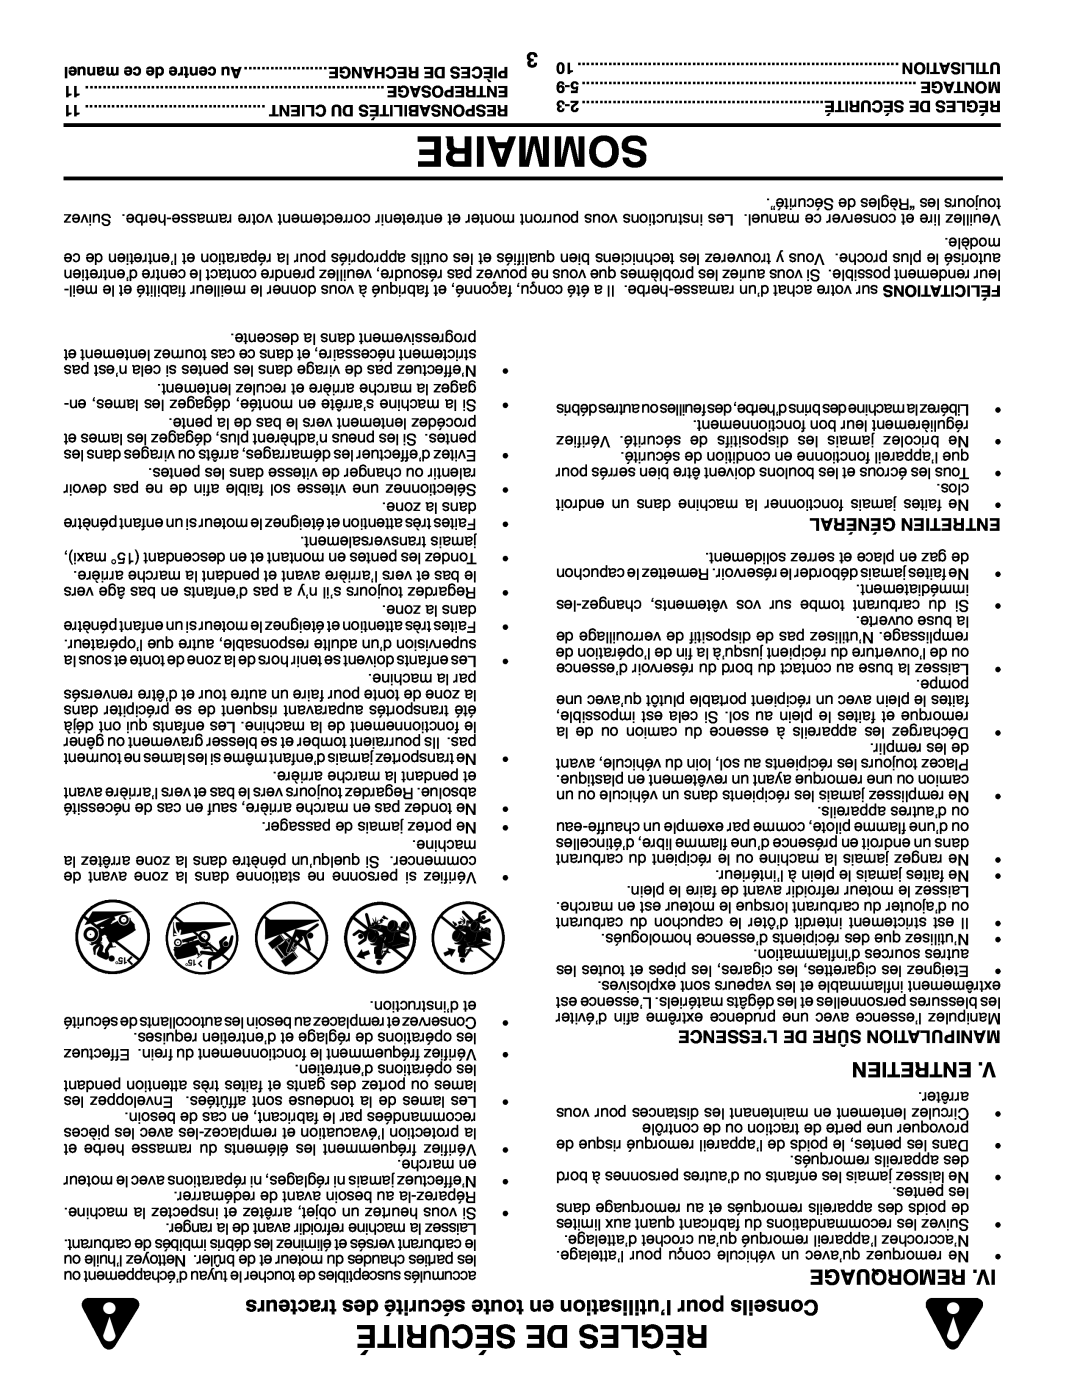 Poulan 960 72 00-13 owner manual Sommaire, Sécurité De Règles, Entretien, Remorquage 